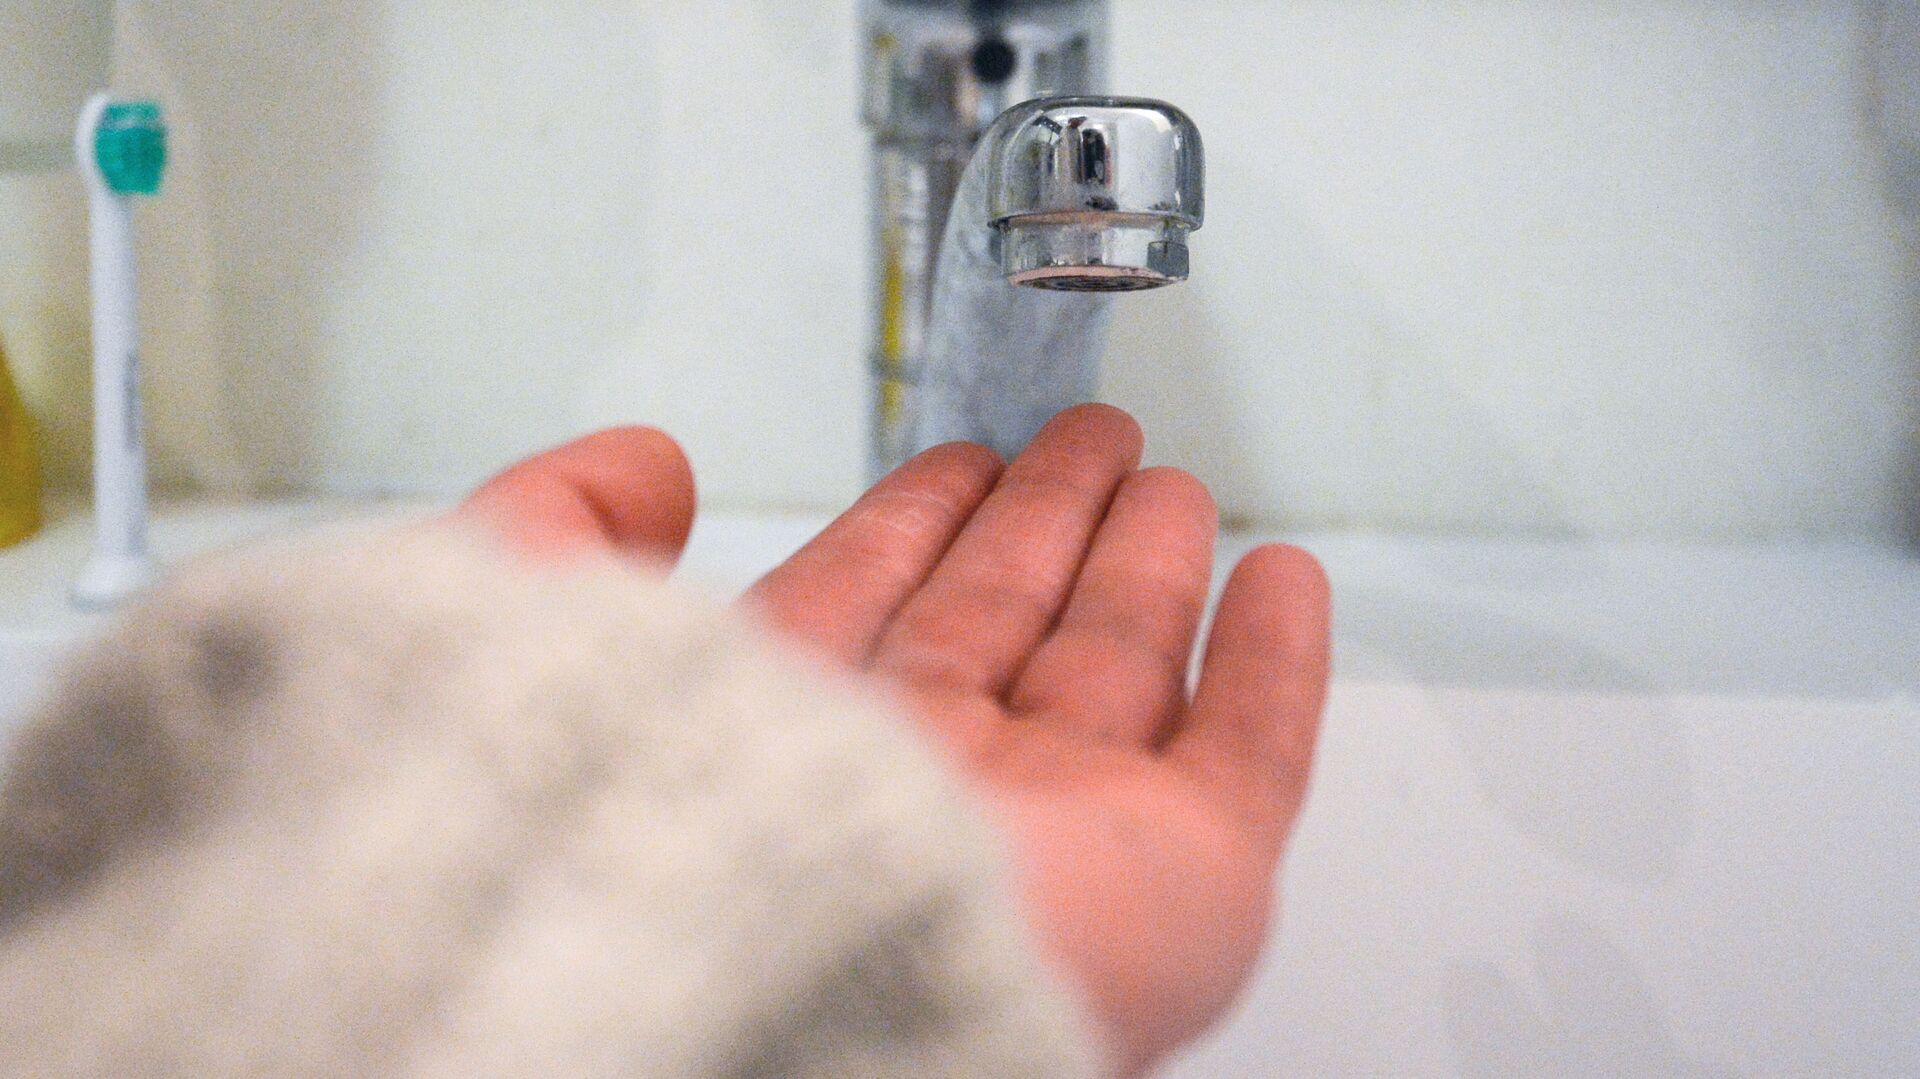 Кран в ванной комнате во время сезонного отключения горячей воды - РИА Новости, 1920, 12.12.2020